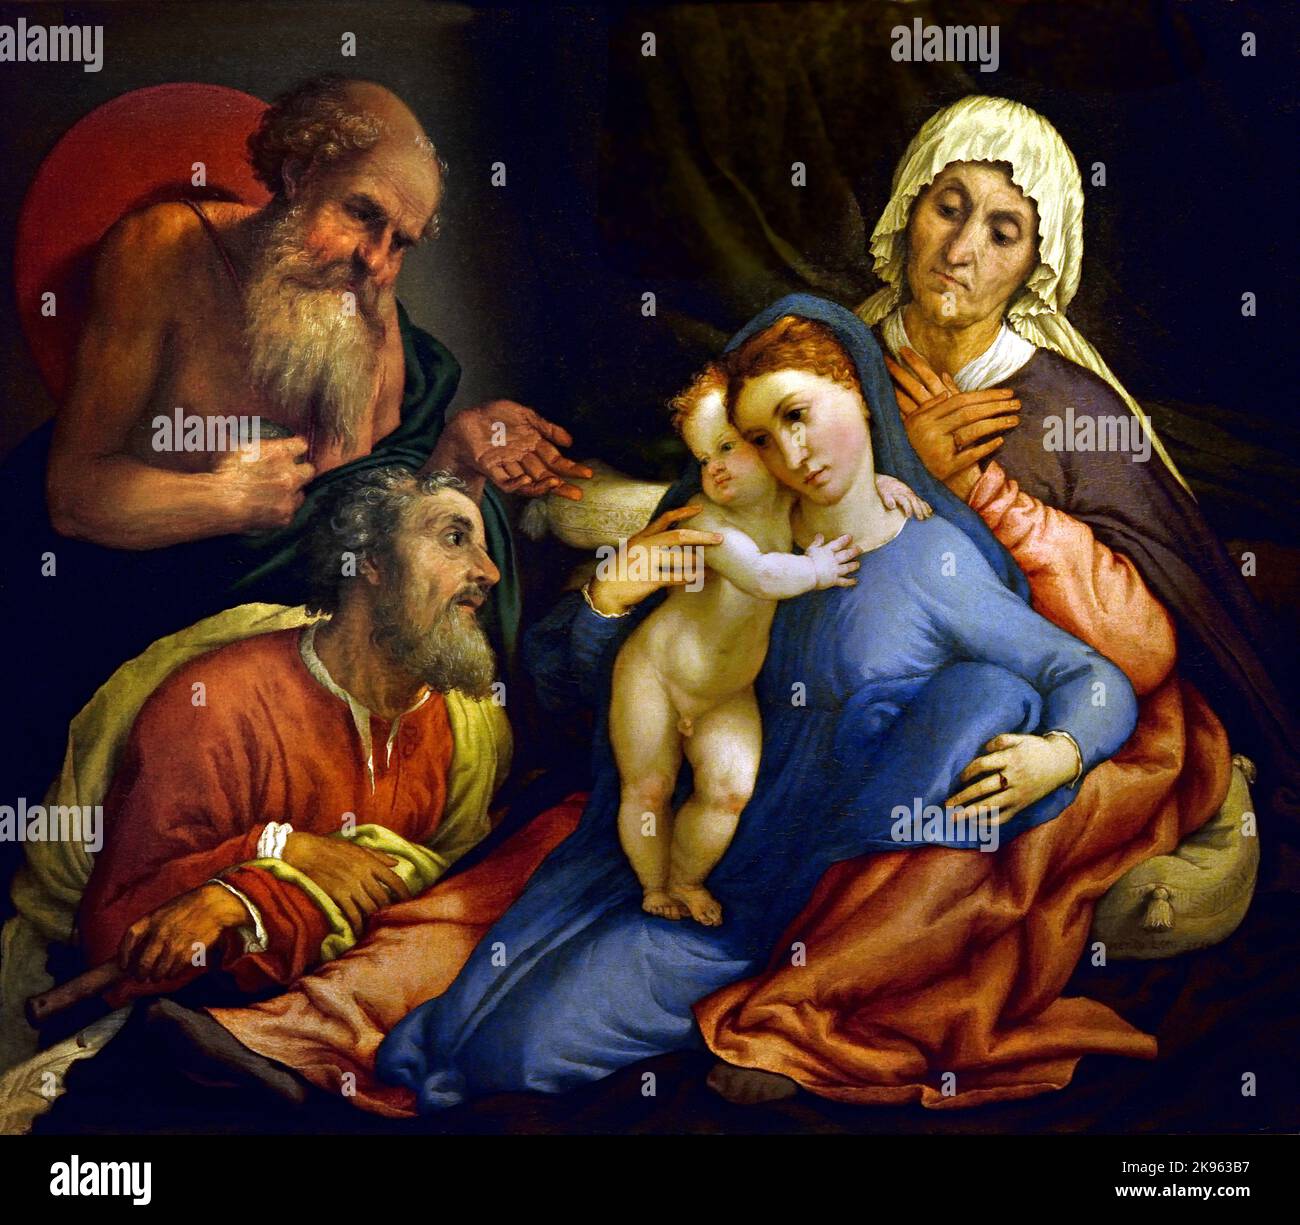 Heilige Familie mit dem hl. Hieronymus, Lorenzo Lotto, (Venezia 1480 - Loreto 1556) , Florenz, Italien. ( Die hl. Anna, die sich auf einem Himmelbett mit offenen Beinen an der Stufe lehnt, zwischen denen die Jungfrau und das Jesuskind stehen, links der hl. Hieronymus, der mit der offenen Hand auf die Heilige Familie zeigt, ) Stockfoto